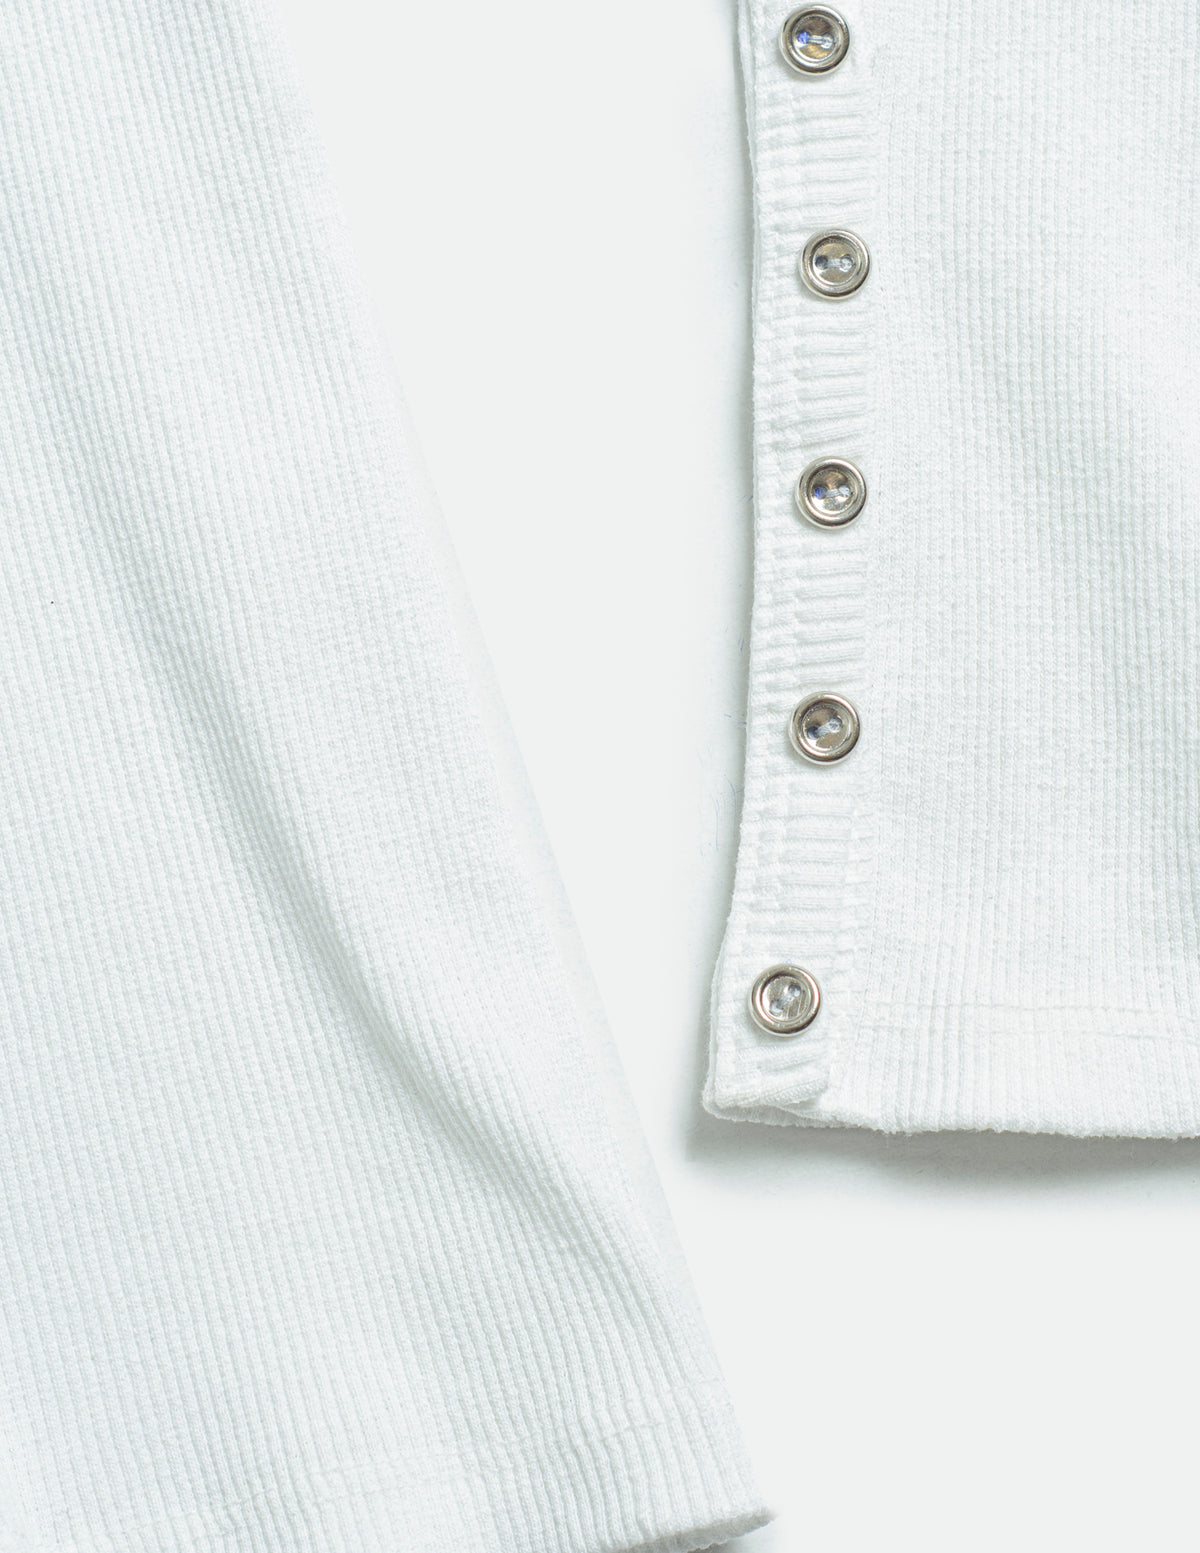 Blusa manga larga con cierre delantero y detalle de botones en mangas.